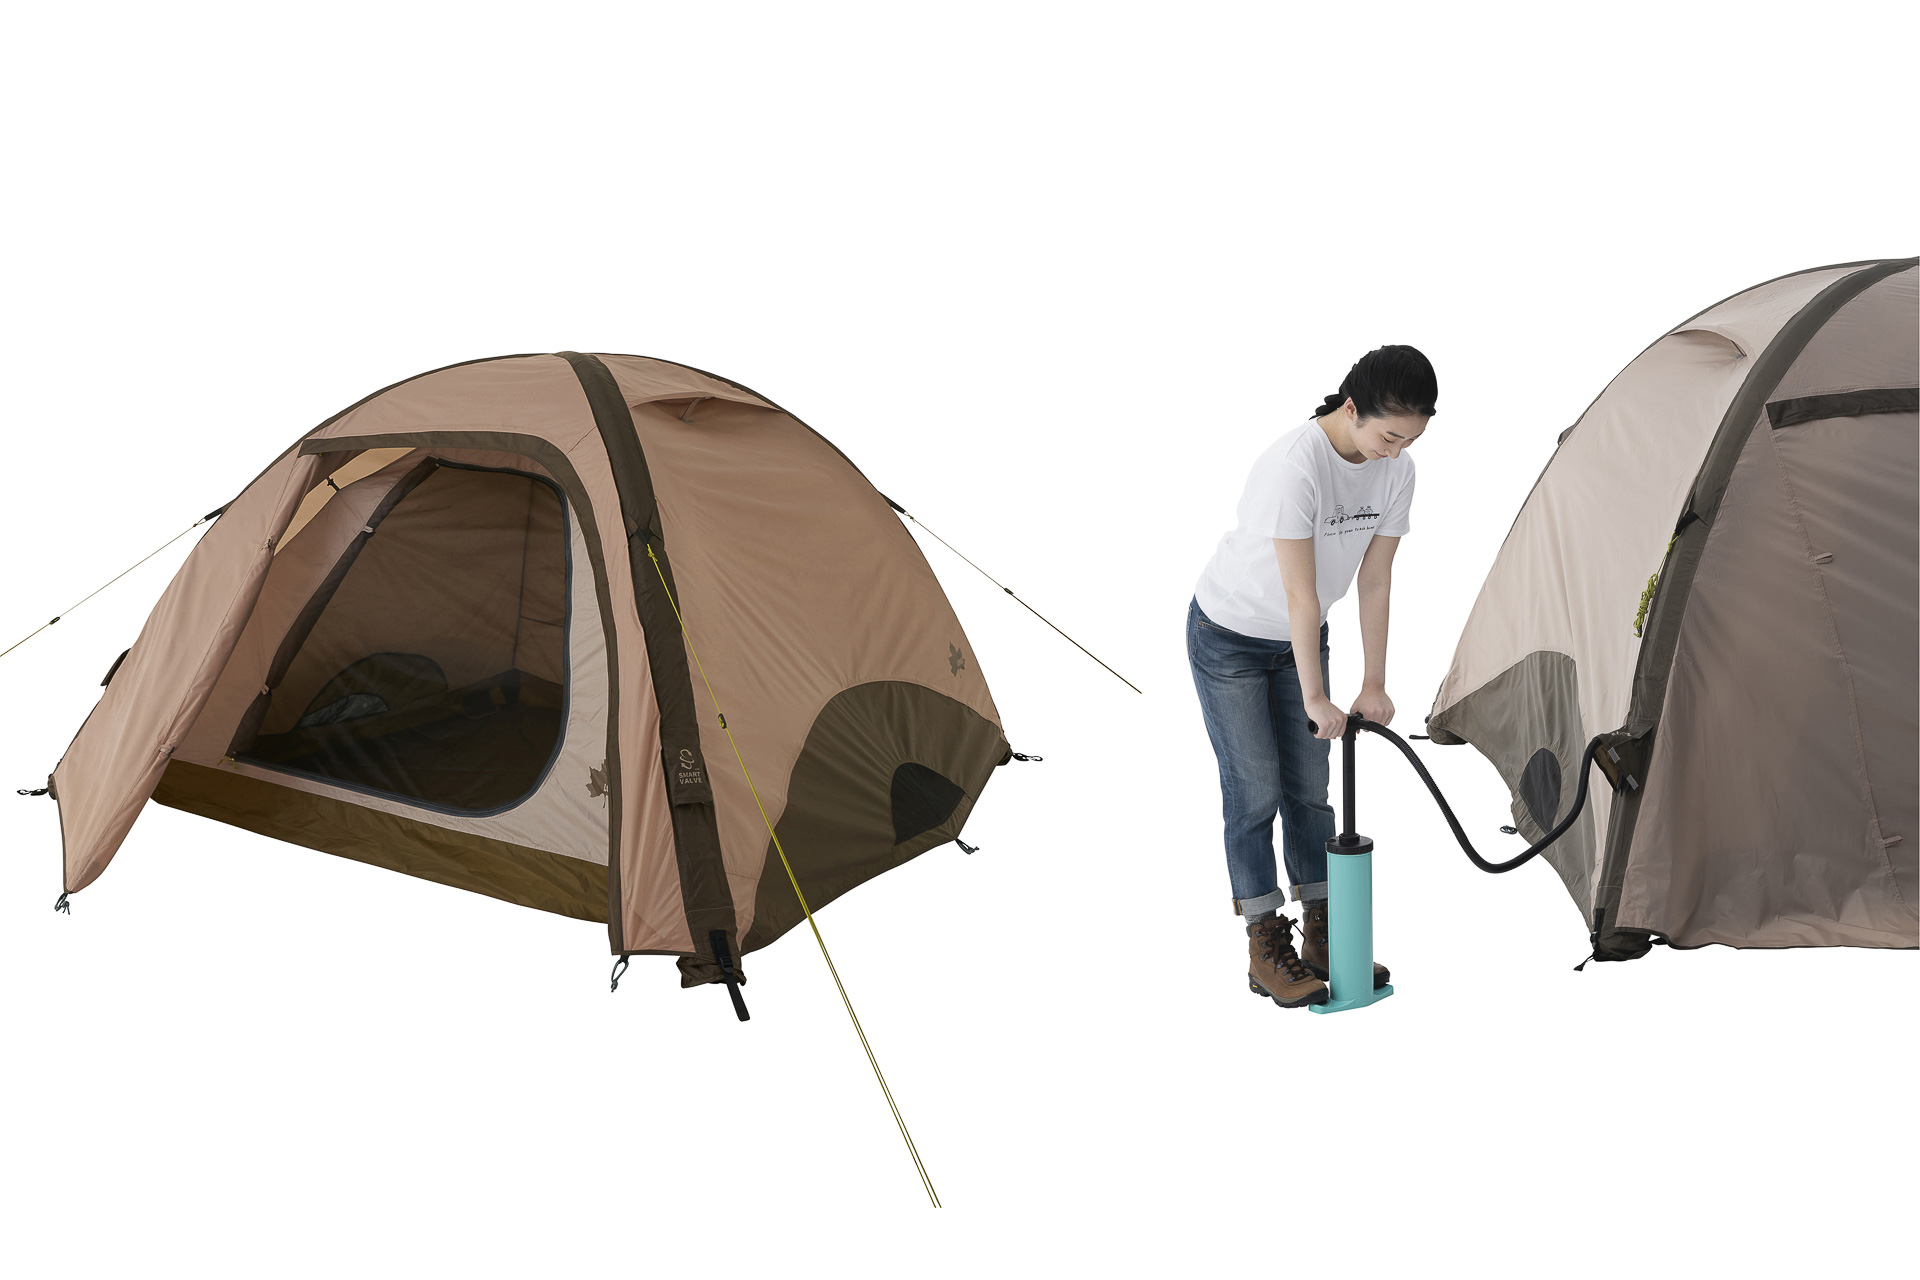 ロゴス、ポンプで空気を注入して設営するテント「Tradcanvas エア